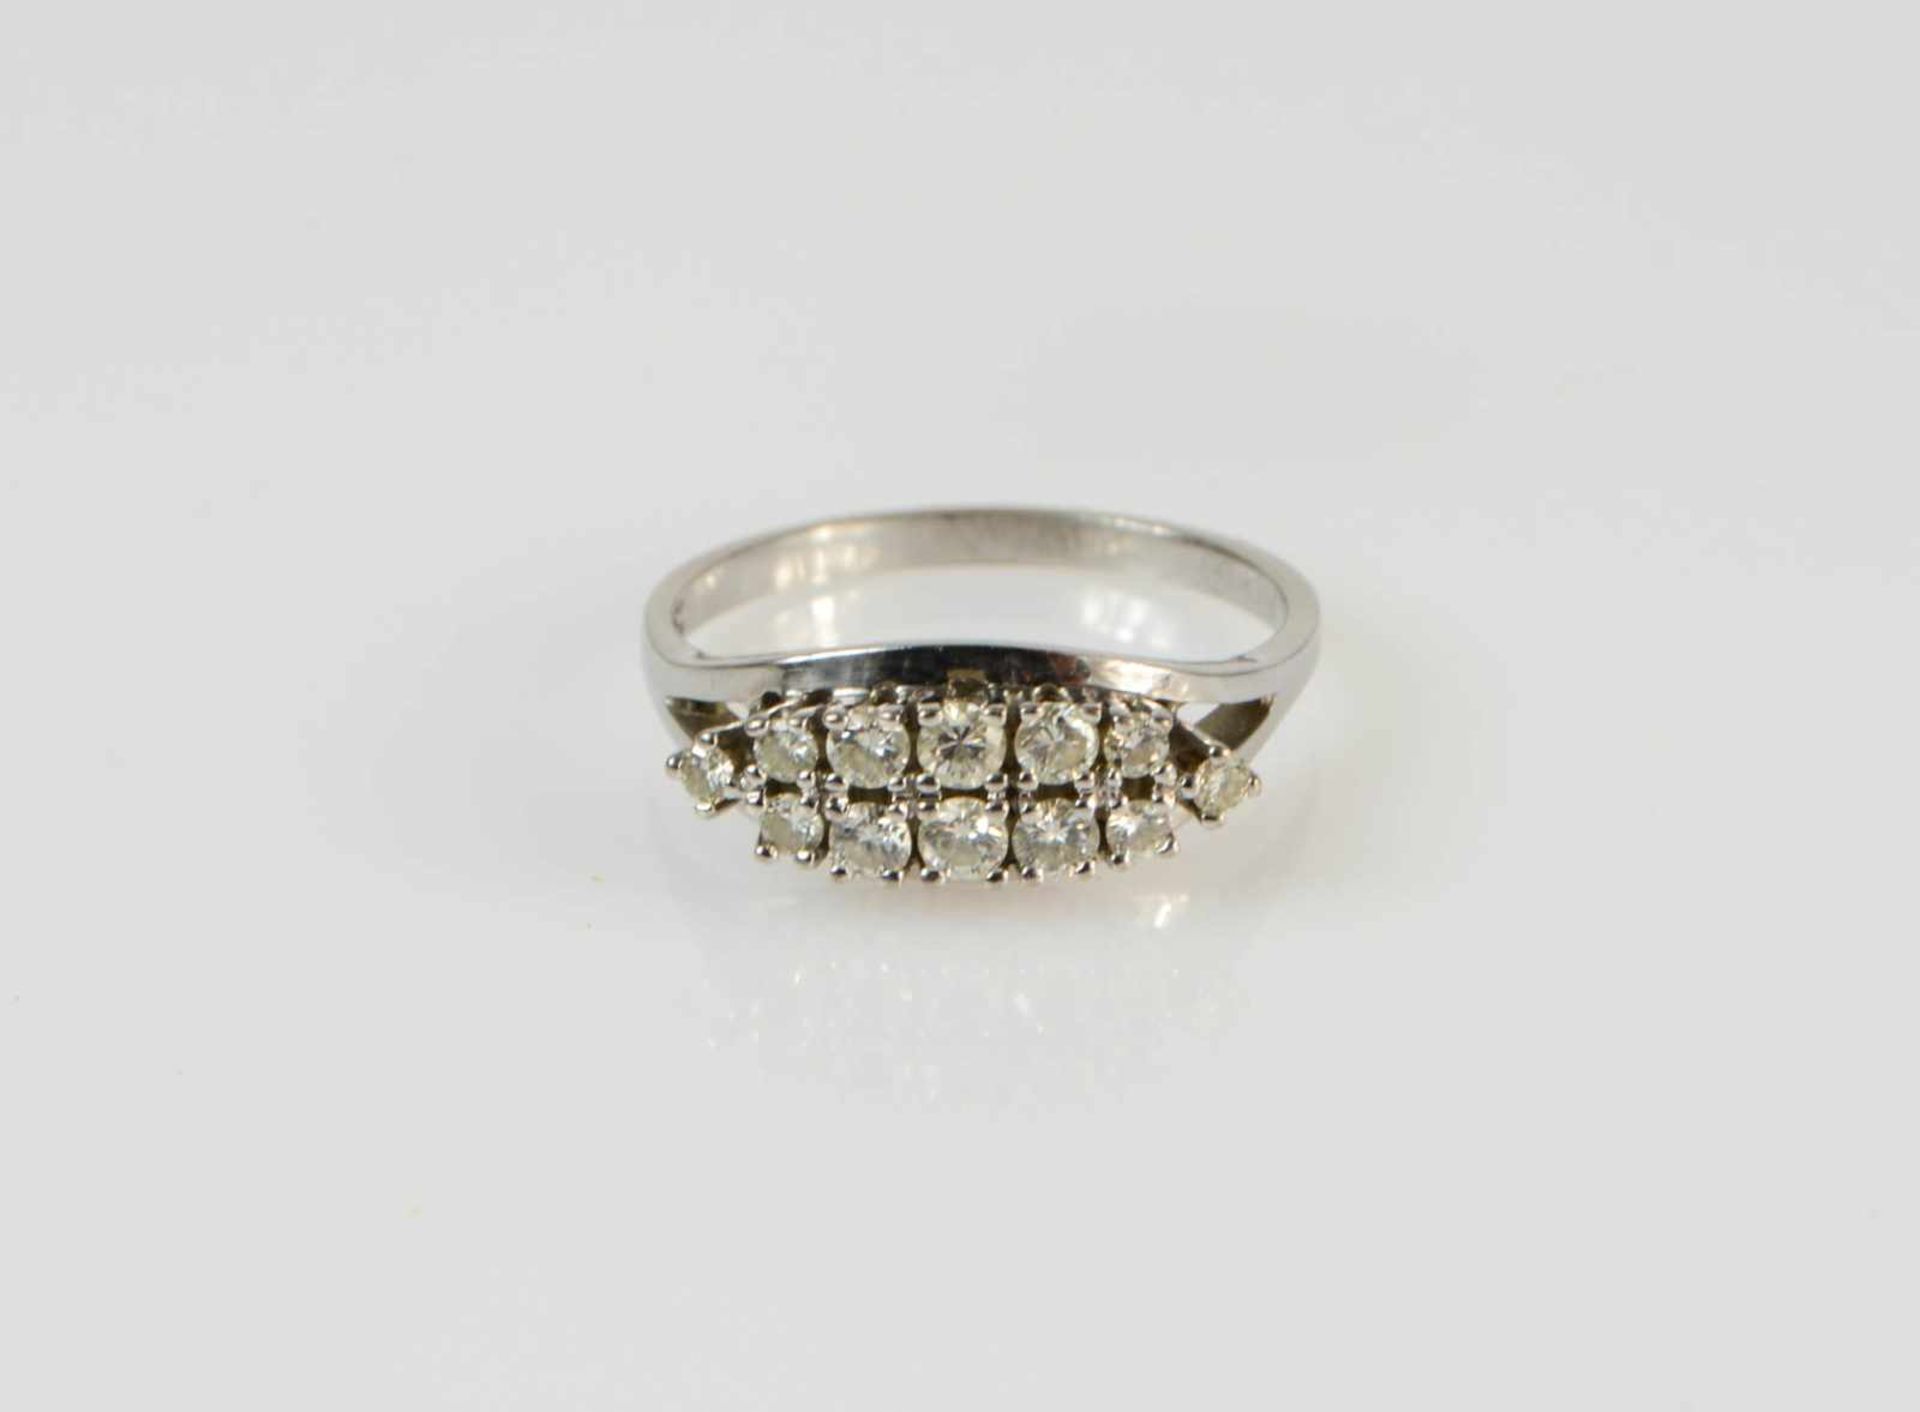 Damenring 585 Weißgold, besetzt mit 12 Diamanten, zusammen 0,51 ct, if cr, Ringdurchmesser 19 mm,